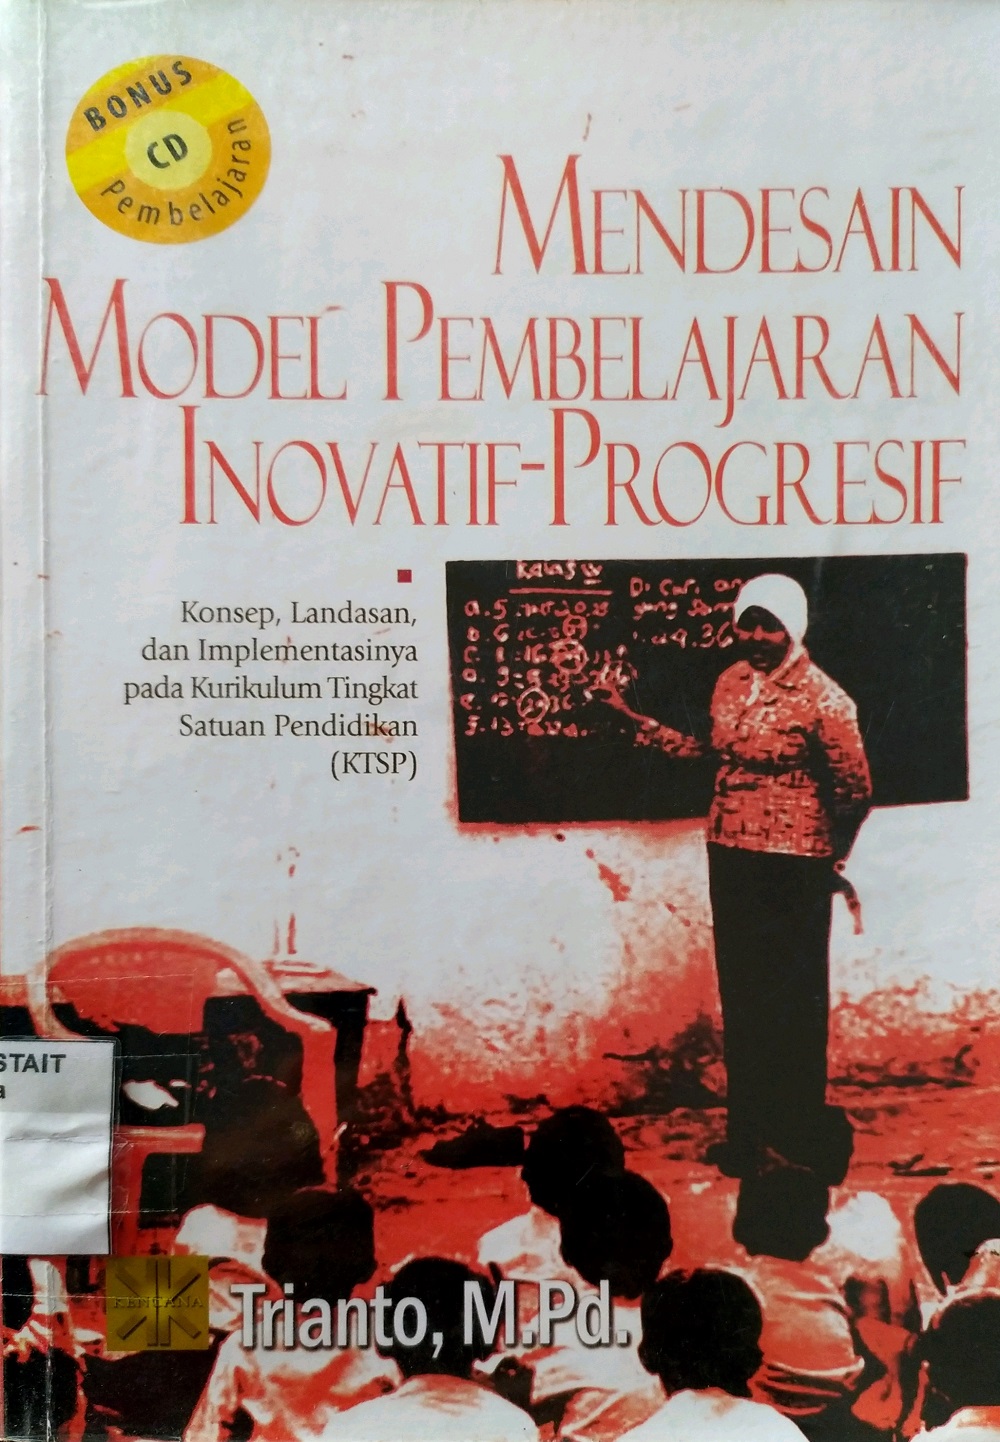 Mendesain Model Pembelajaran Inovatif-Progresif : Konsep, Landasan, dan Implementasinya pada Kurikulum Tingkat Satuan Pendidikan (KTSP)